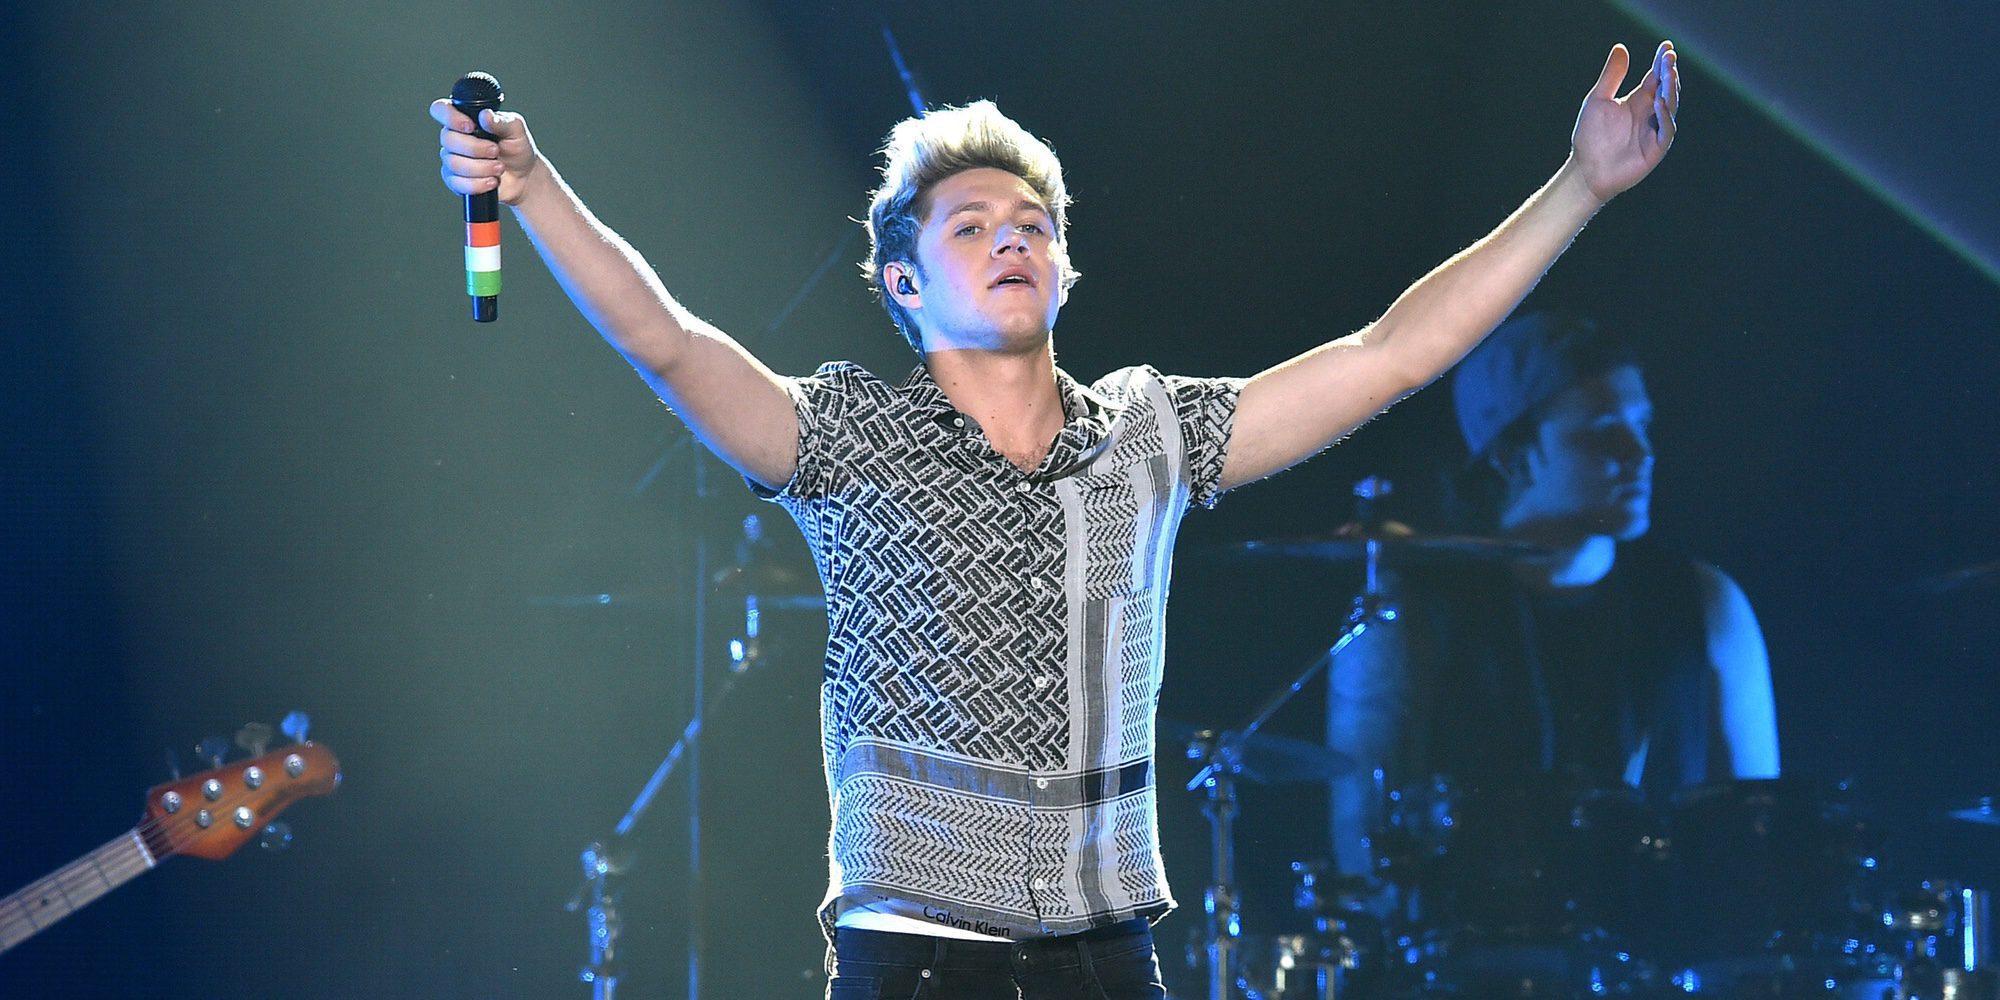 Niall Horan canta por primera vez solo en directo su single 'This Town' con fallo de sonido incluido